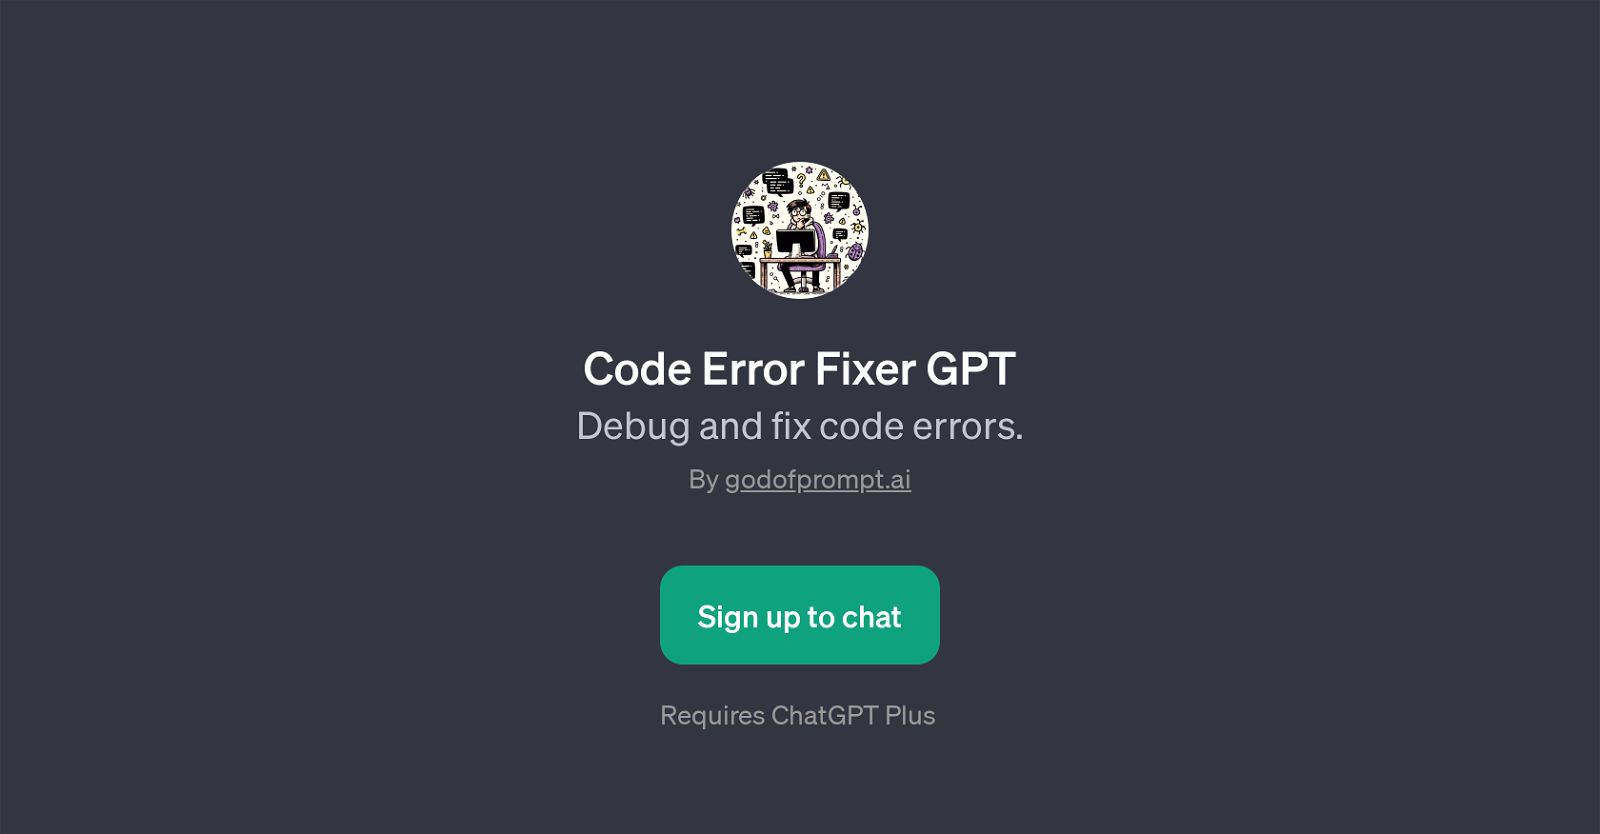 Code Error Fixer GPT website